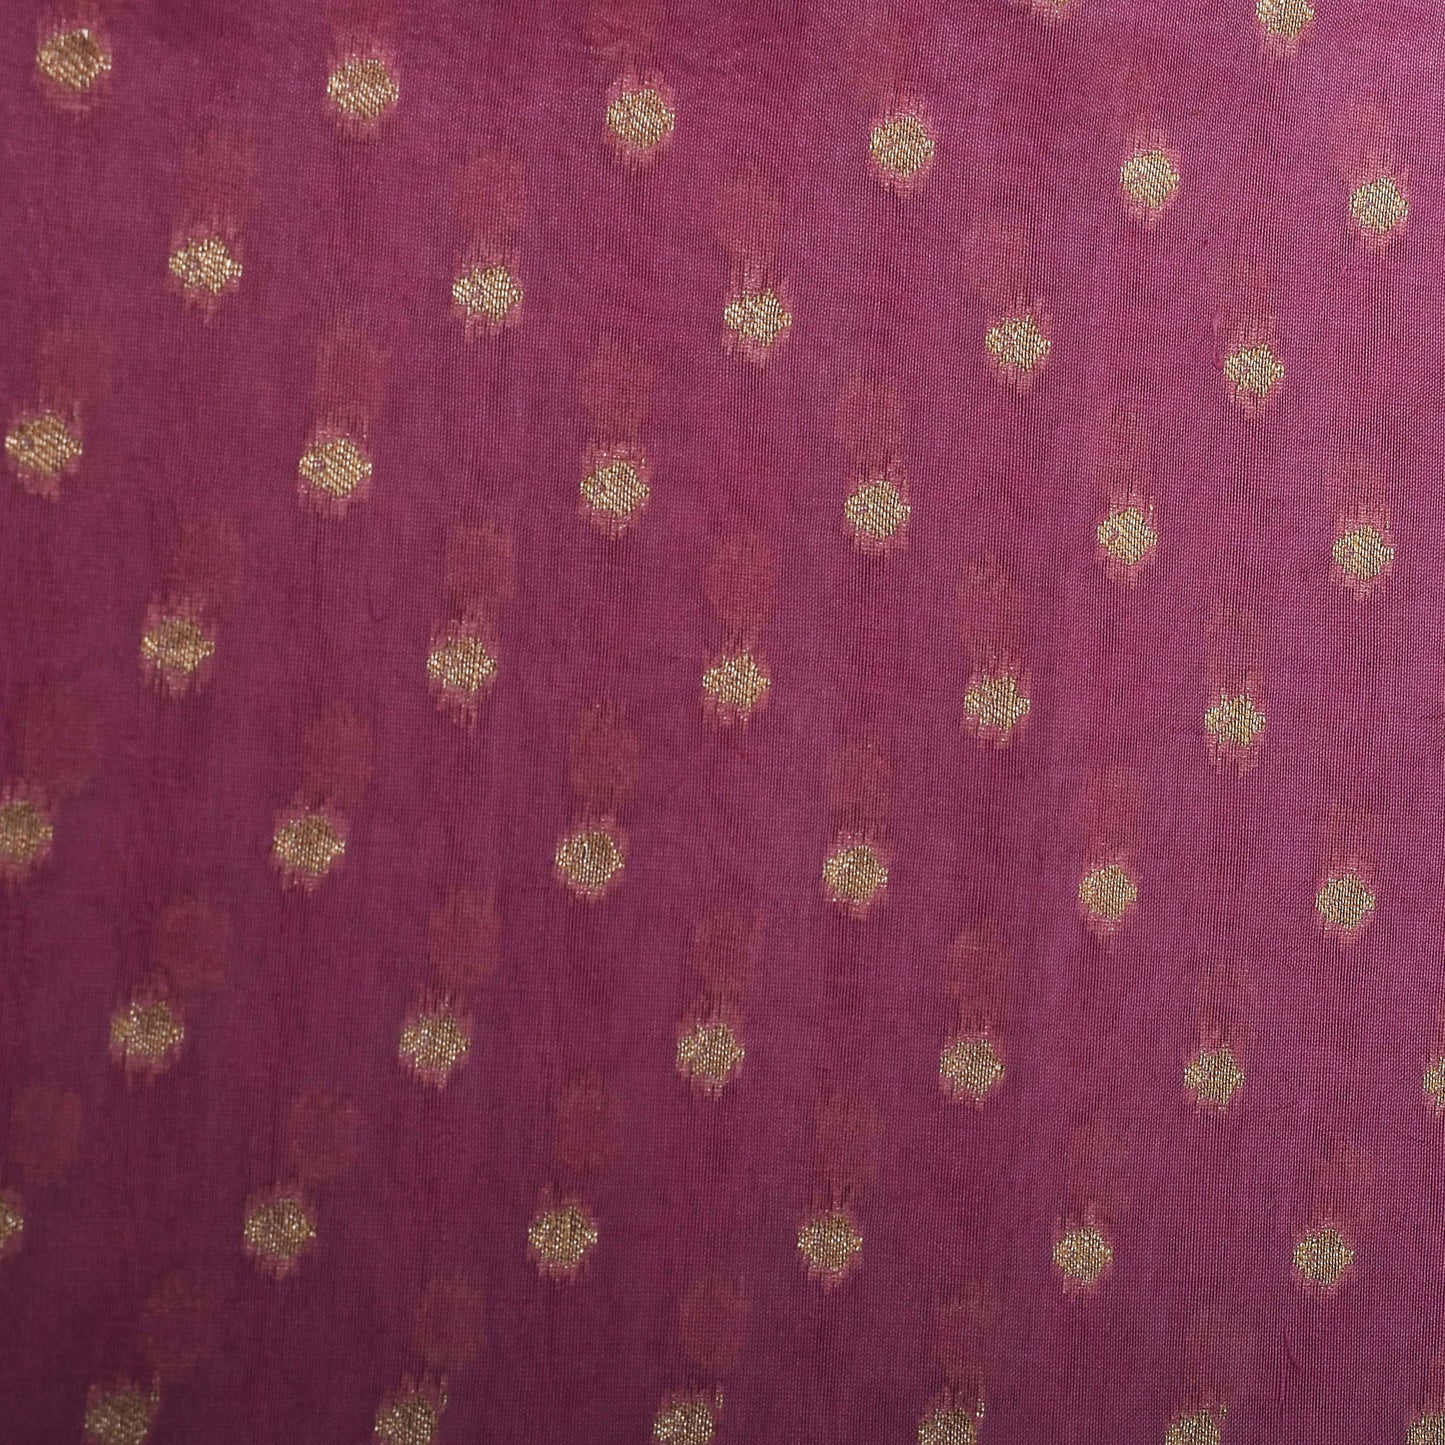 Pink Color Katan Dupion Brocade Fabric